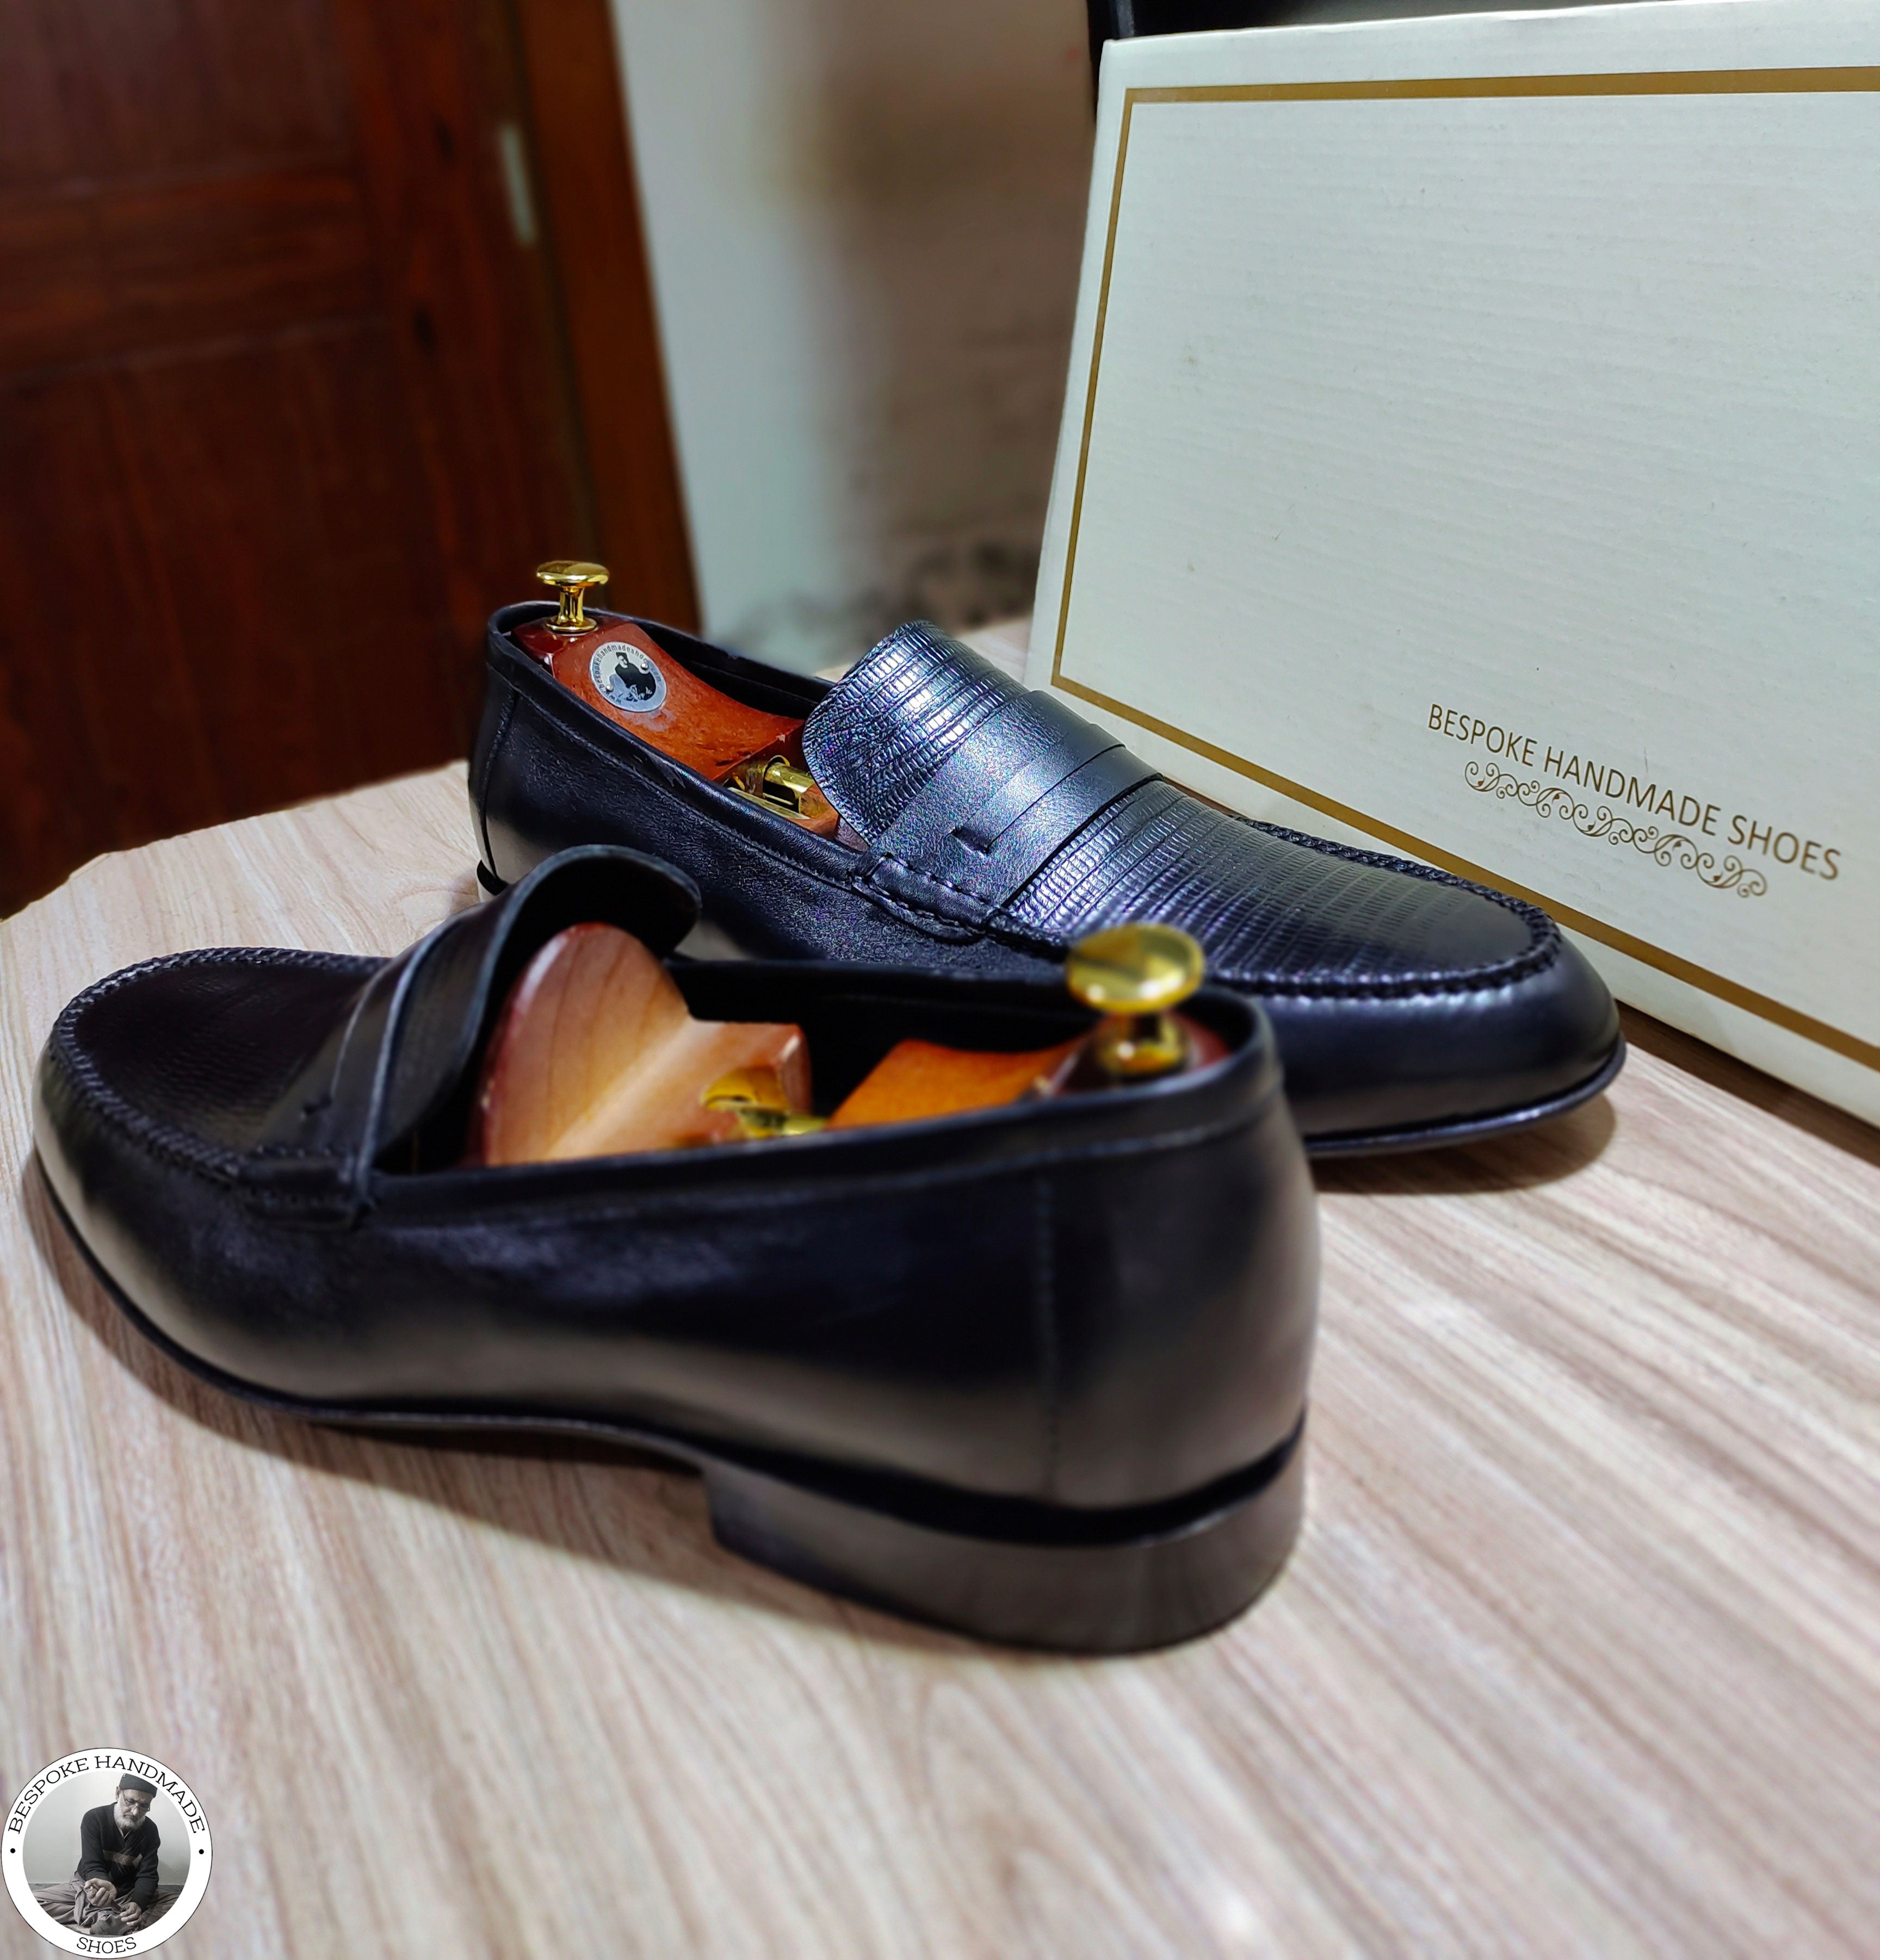 New Men's Handmade Black Color Leather Slip on Loafer Moccasian Dress / Formal Shoes